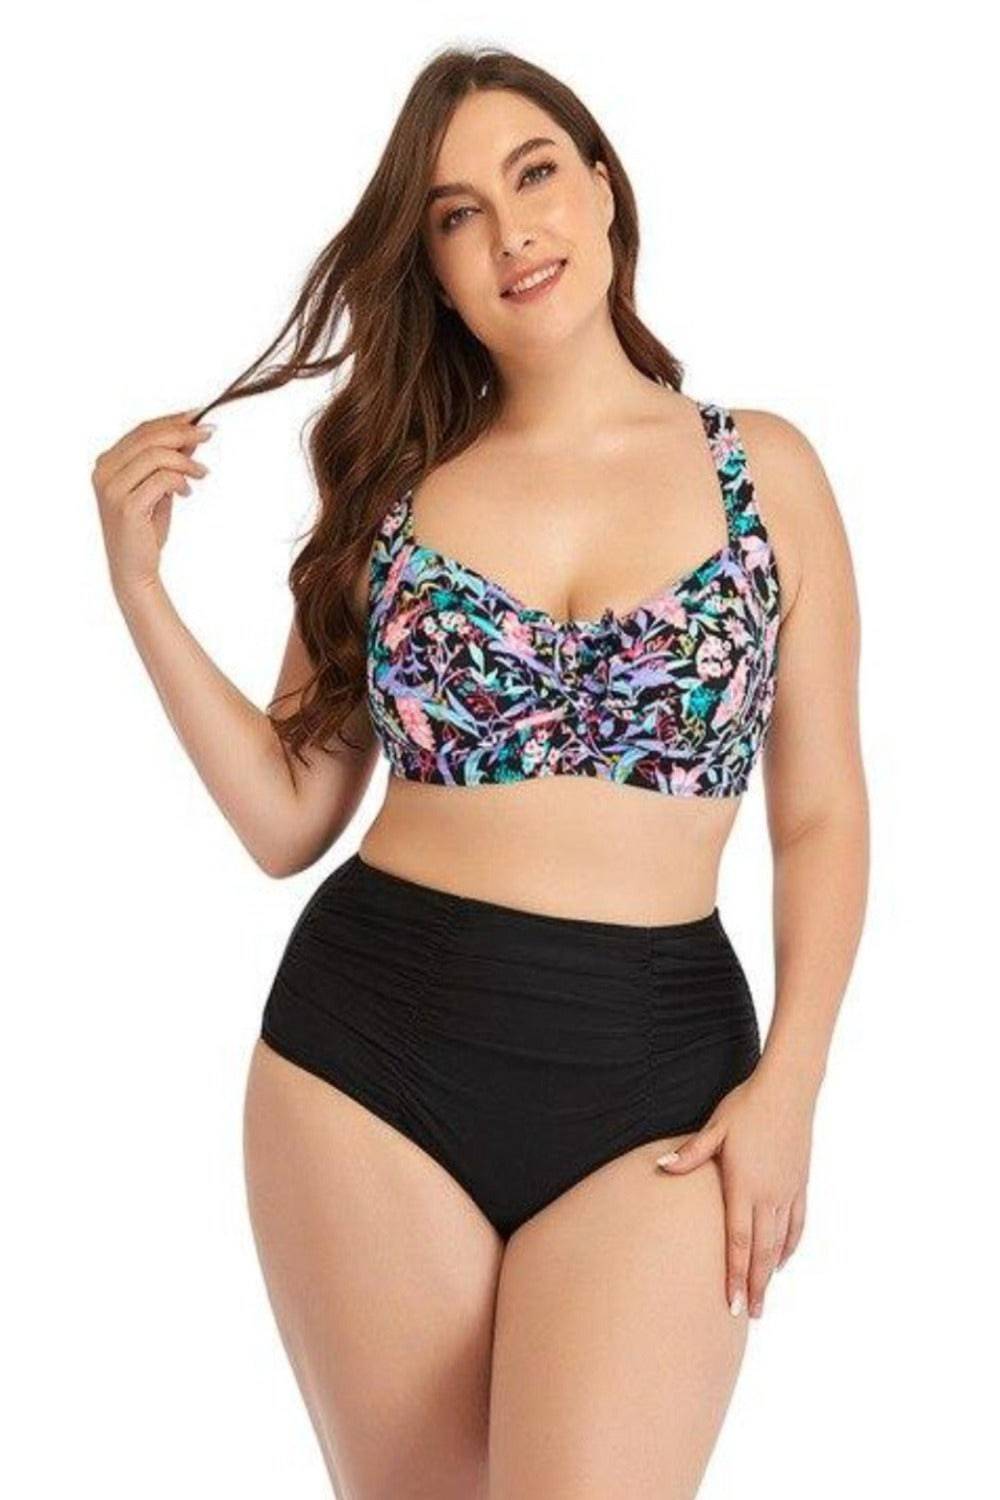 Floral Two-Piece Plus Size Bikini High Waist Tummy Control Push Up Bra Swimsuit - TGC Boutique - Plus Size Swimsuit